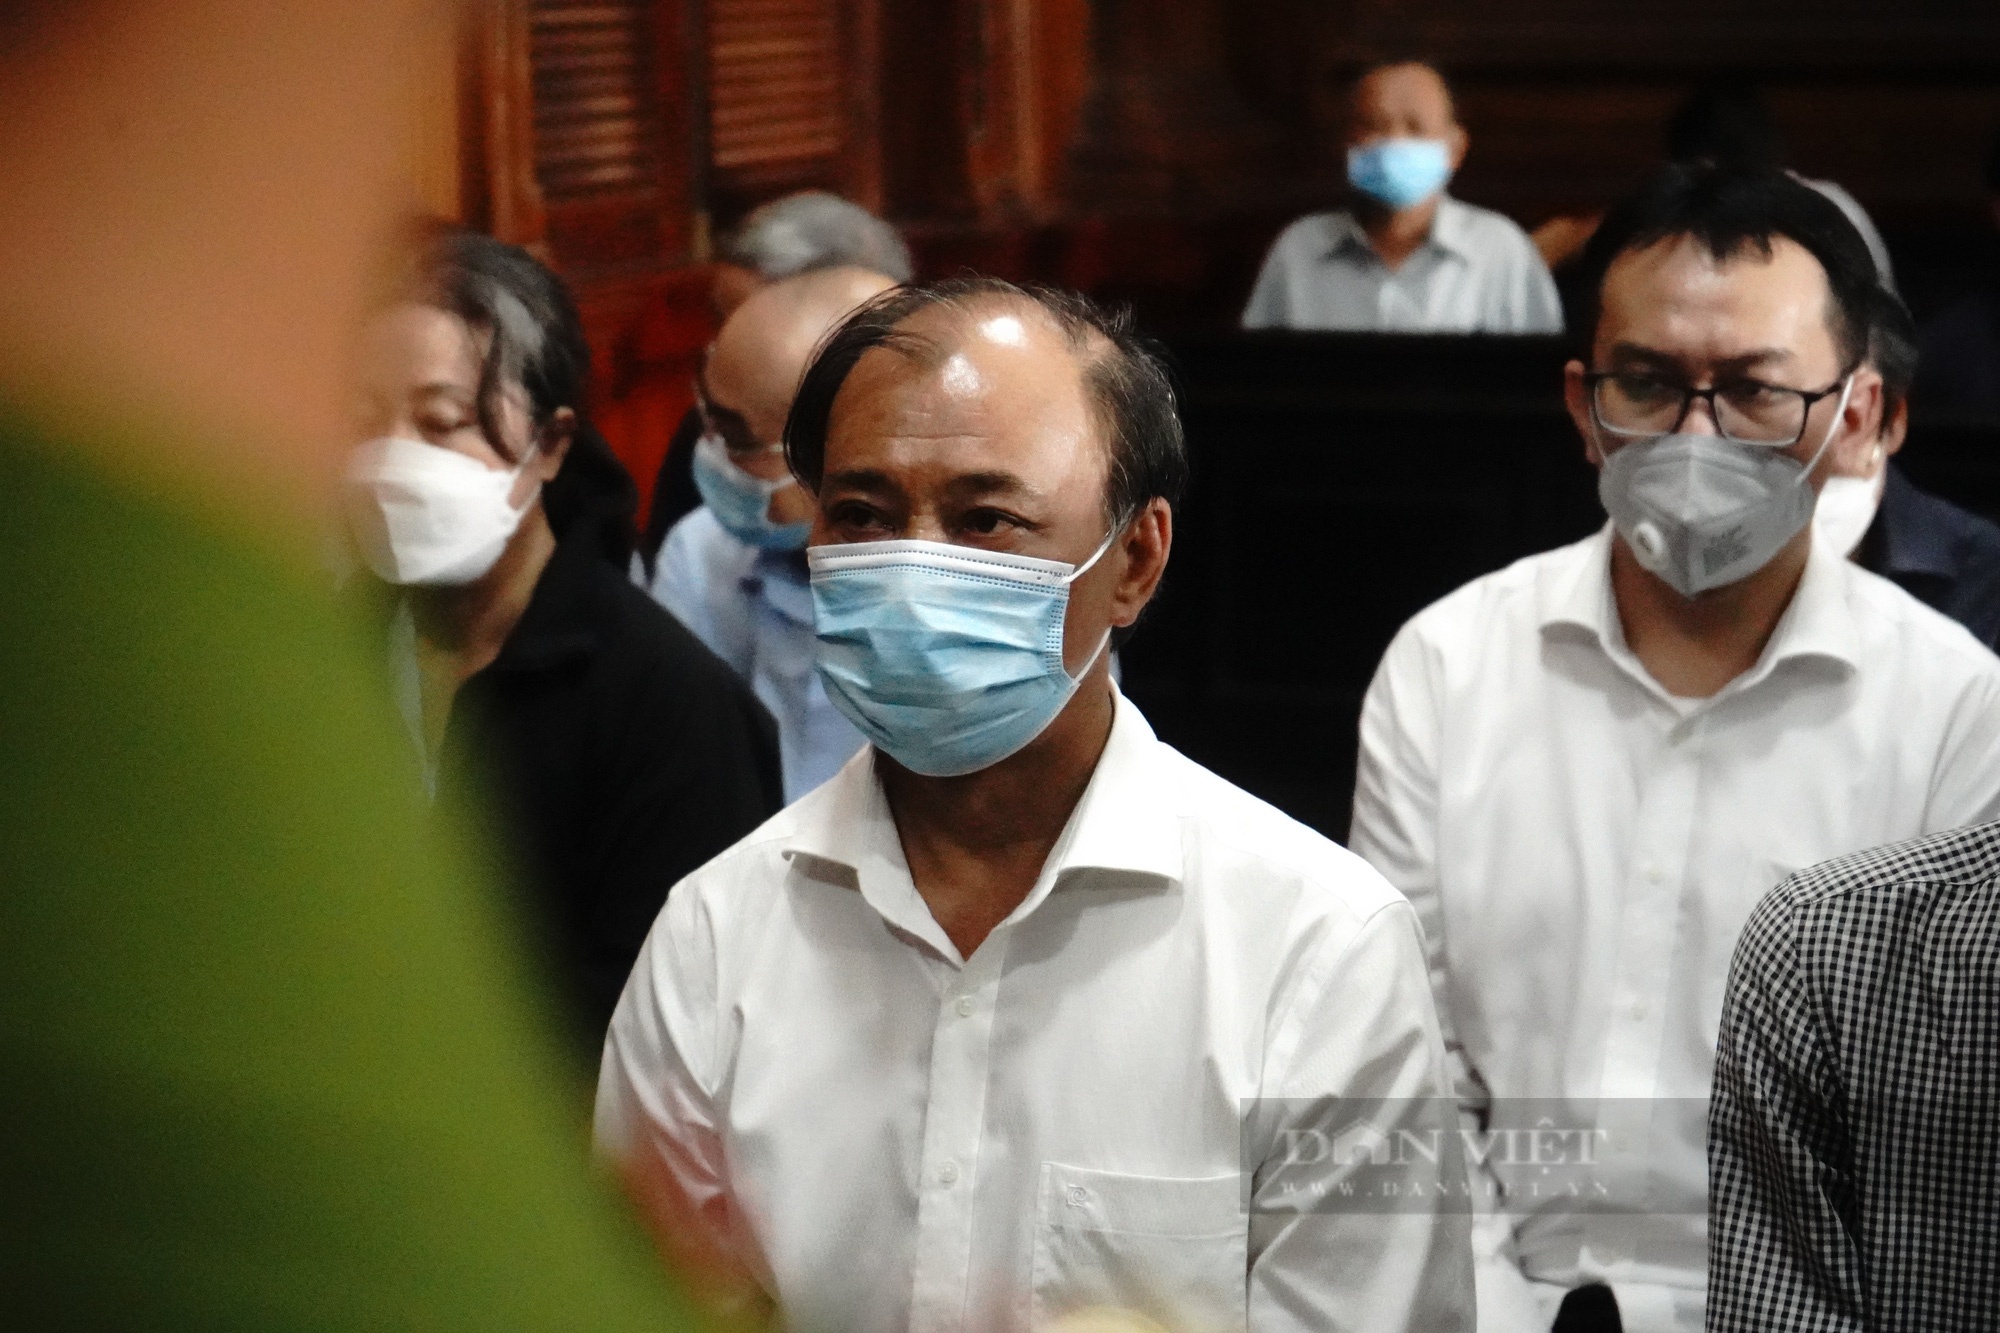 Toàn cảnh tuyên án các bị cáo liên quan đến vụ SAGRI: Bị cáo Lê Tấn Hùng lĩnh án 25 năm tù  - Ảnh 2.